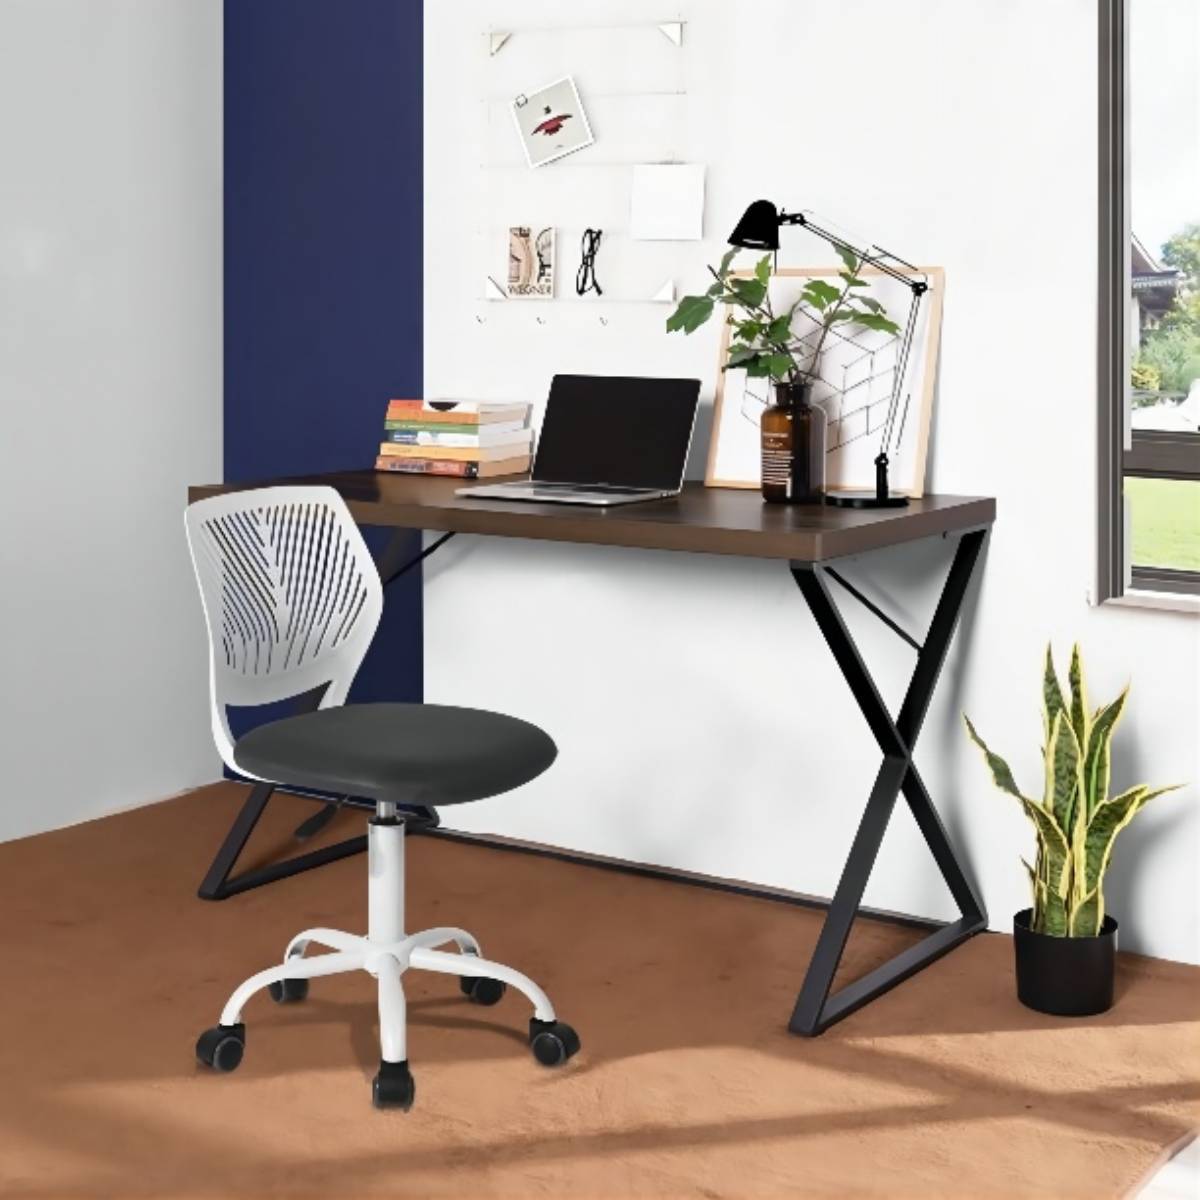 47.2" L Computer Desk, Console Desk WALNUT & BLACK walnut+black-mdf-metal & wood